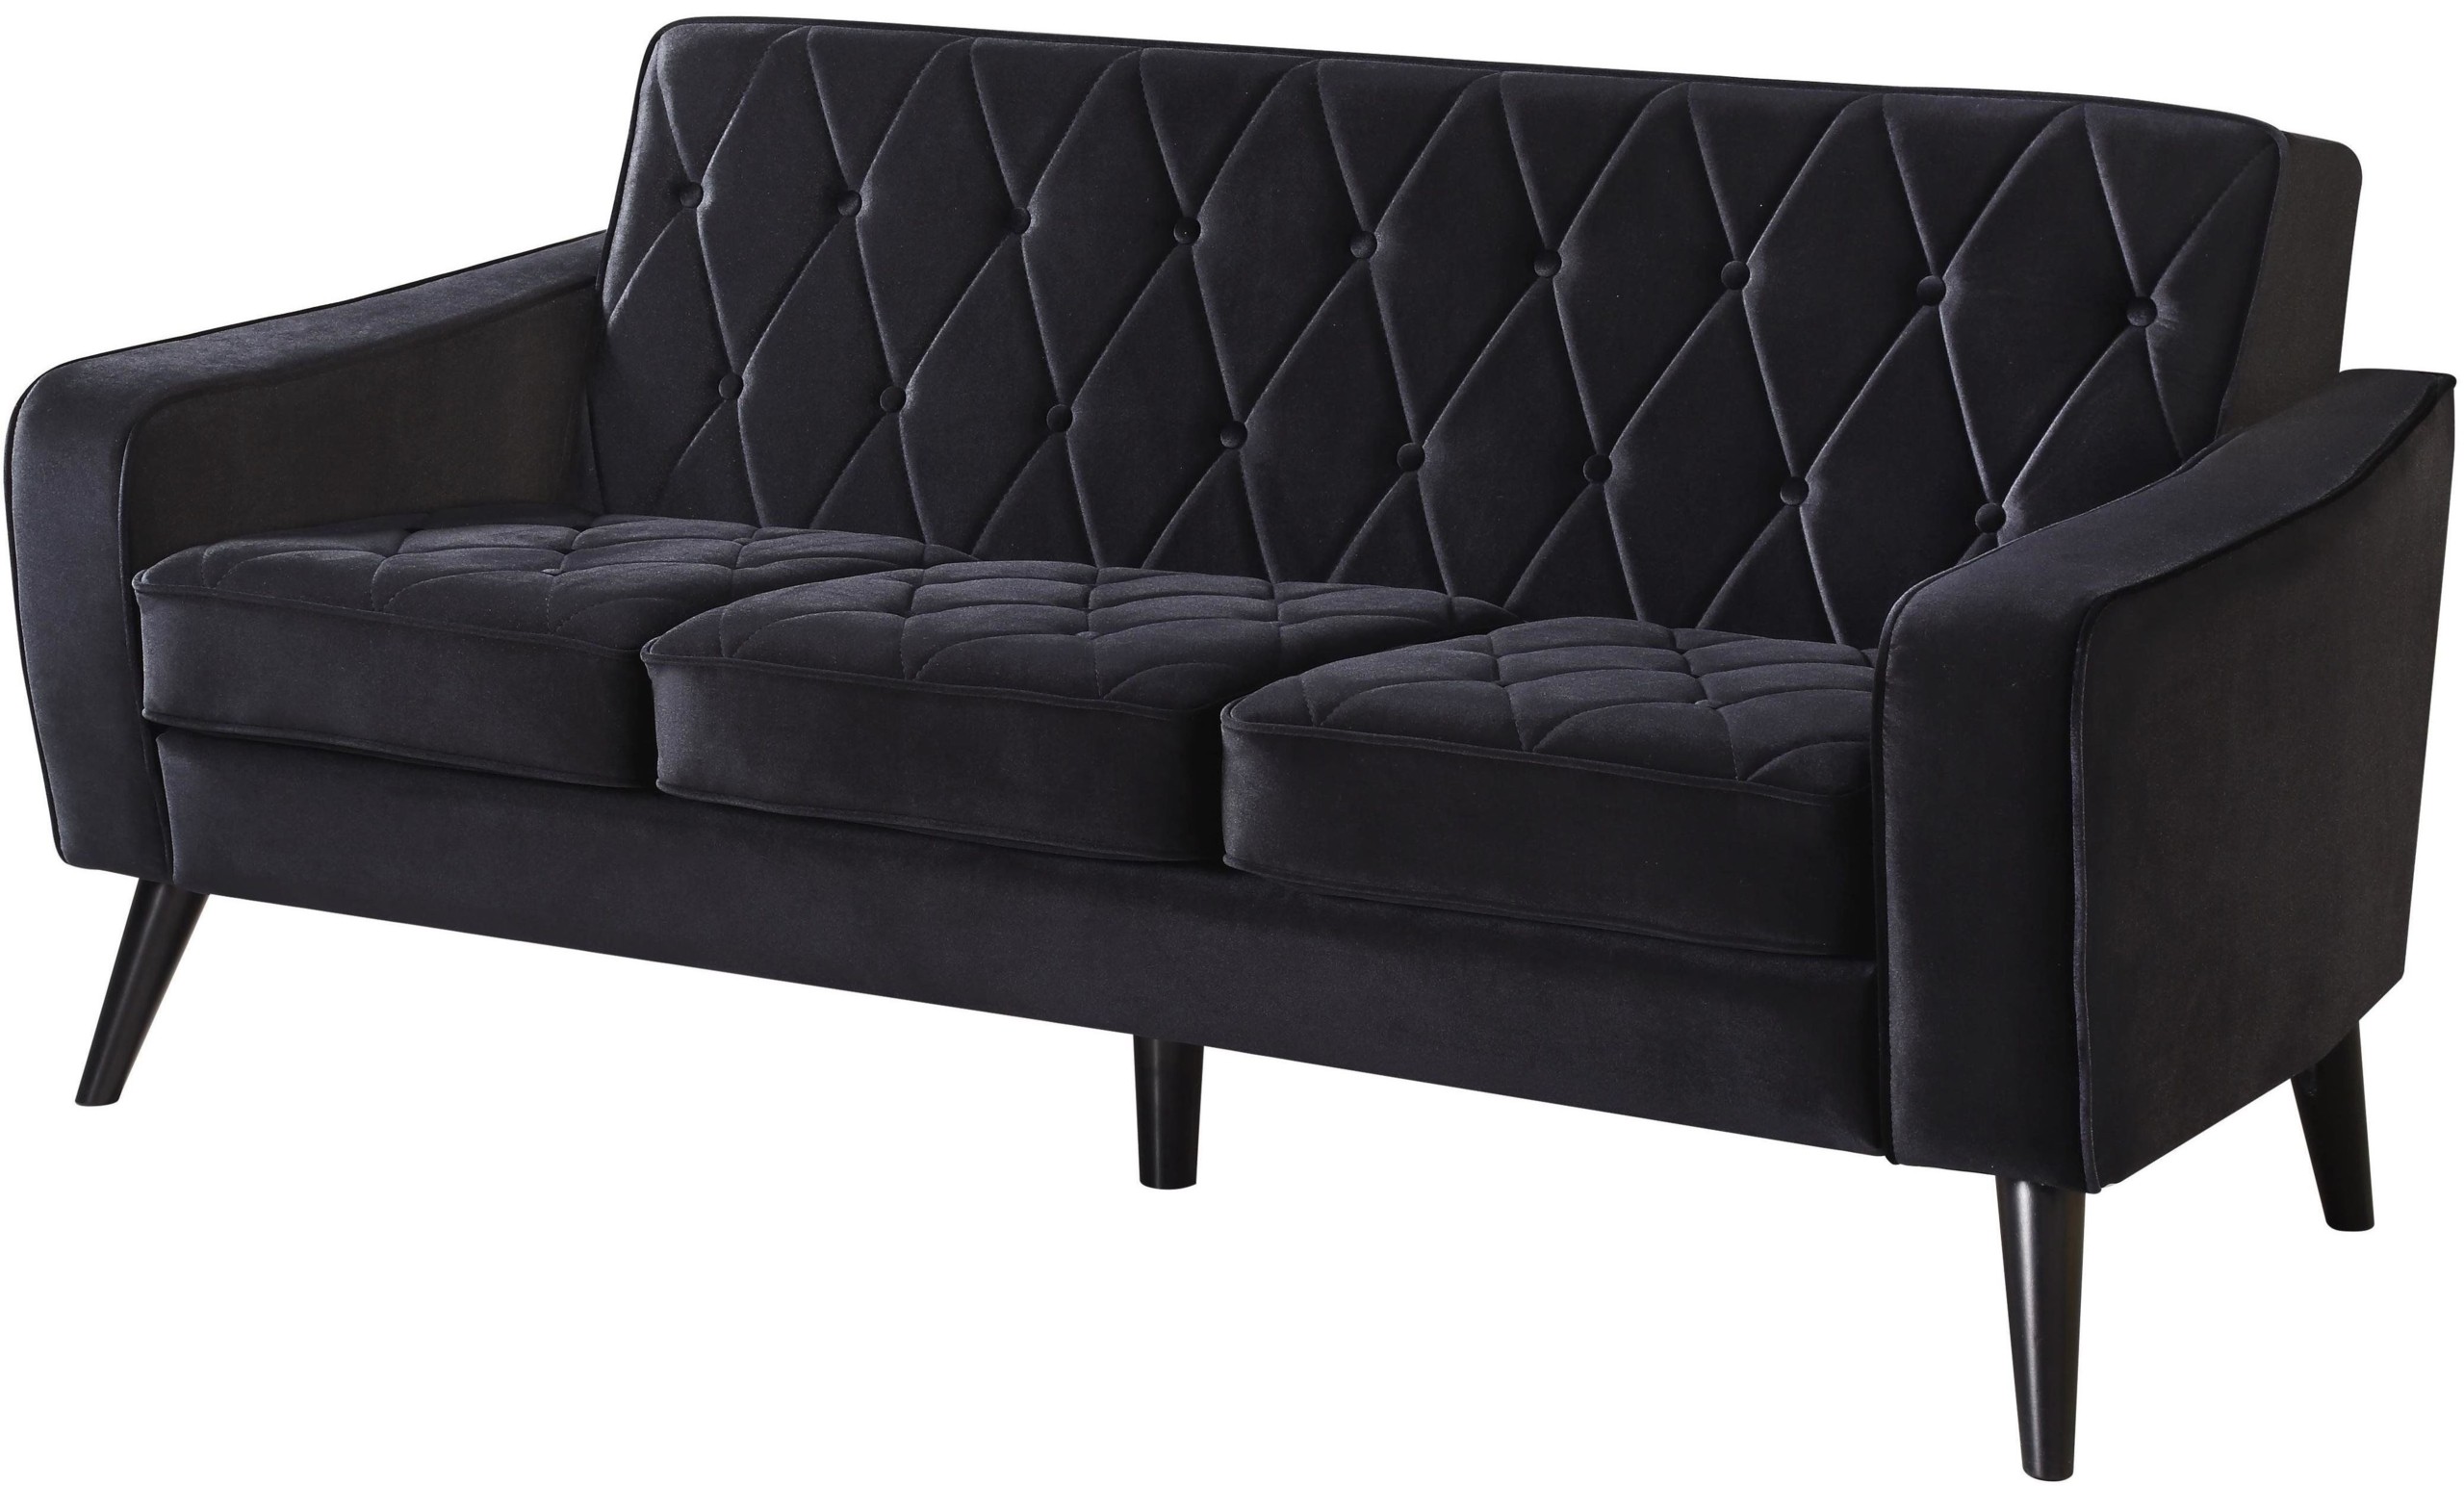 Bowery black velvet sofa from tov tov 183 16 coleman